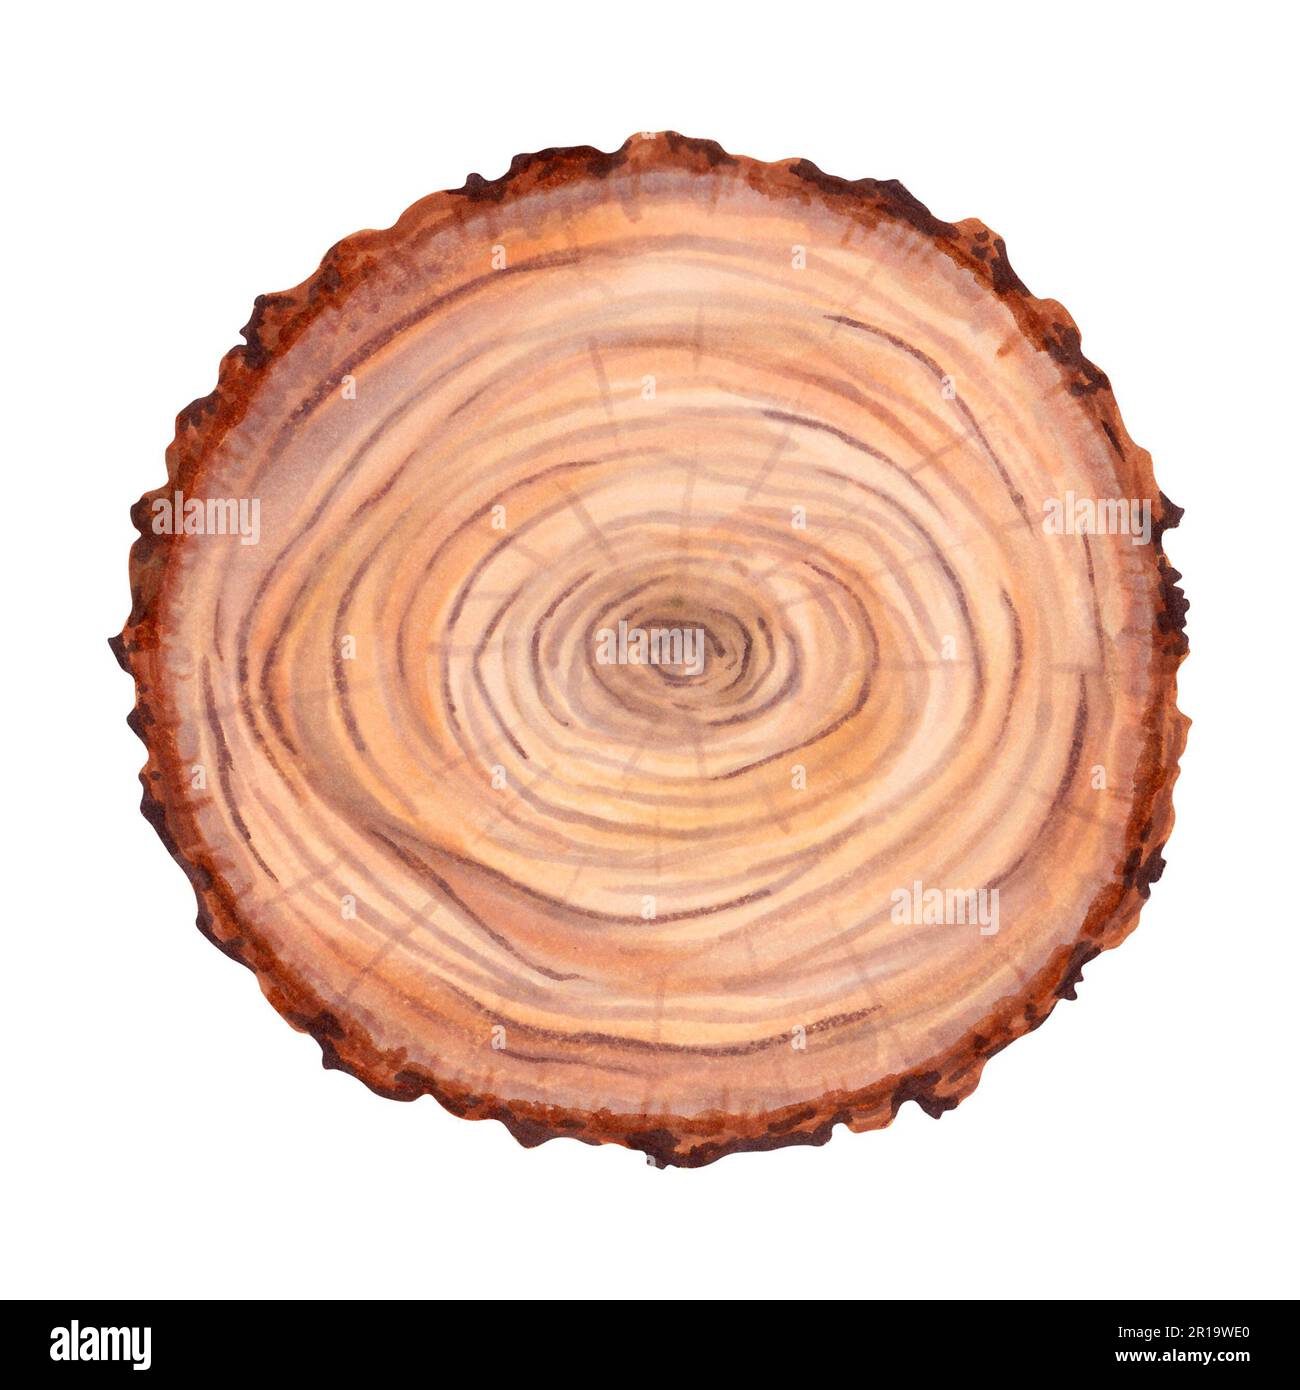 Legno Stump. Un grande pezzo rotondo di legno in sezione trasversale con un anello texture e crepe. Superficie in legno naturale. Foto Stock